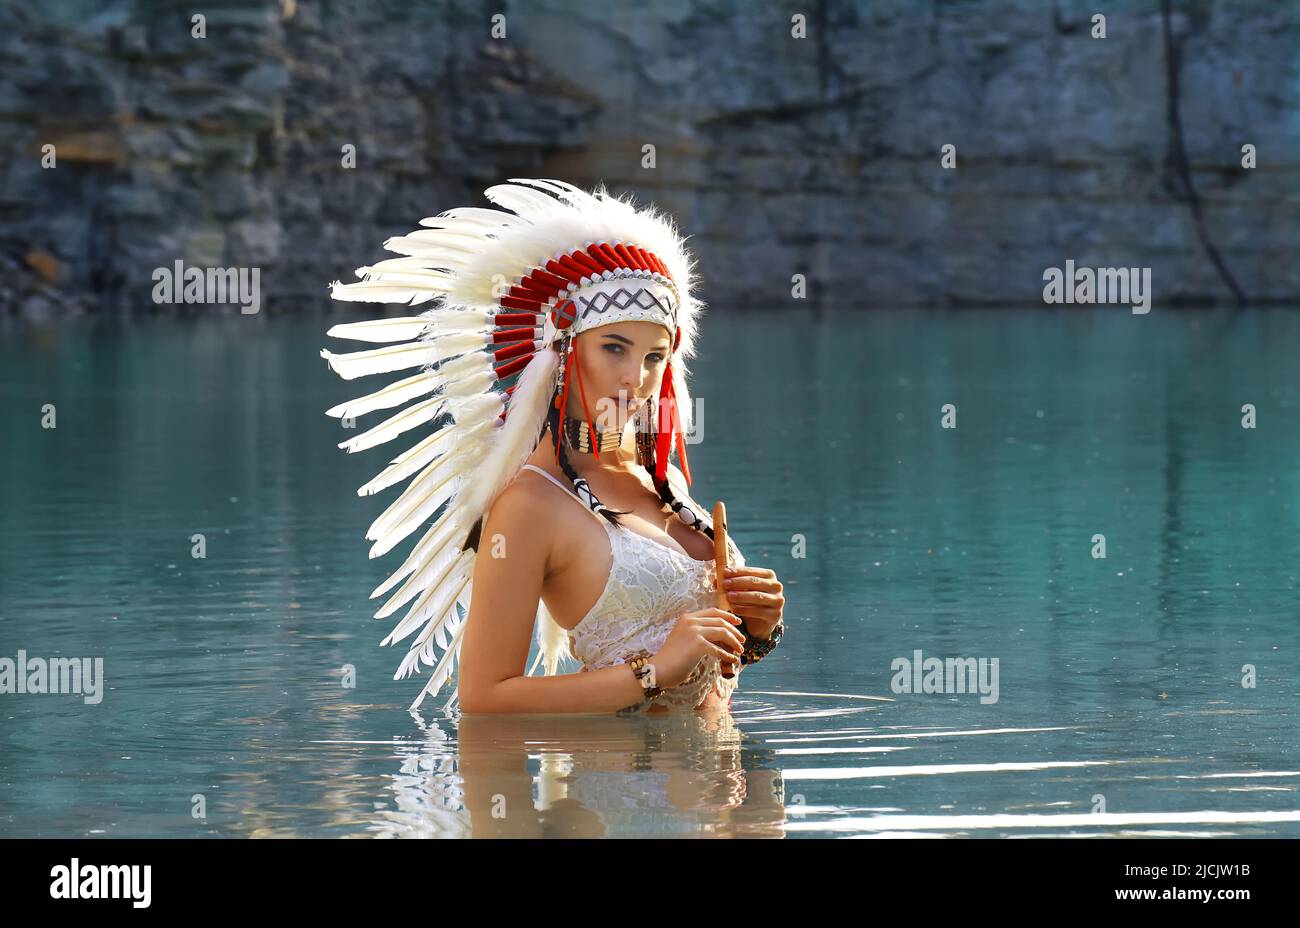 Ein Mädchen wird in einem Steinbruch als Indianerin der Ureinwohner Amerikas gesehen. Sie ist ganz in Weiß gekleidet und trägt einen weißen Kopfschmuck mit Federn. Sie wird beim Flötenspielen gesehen Stockfoto